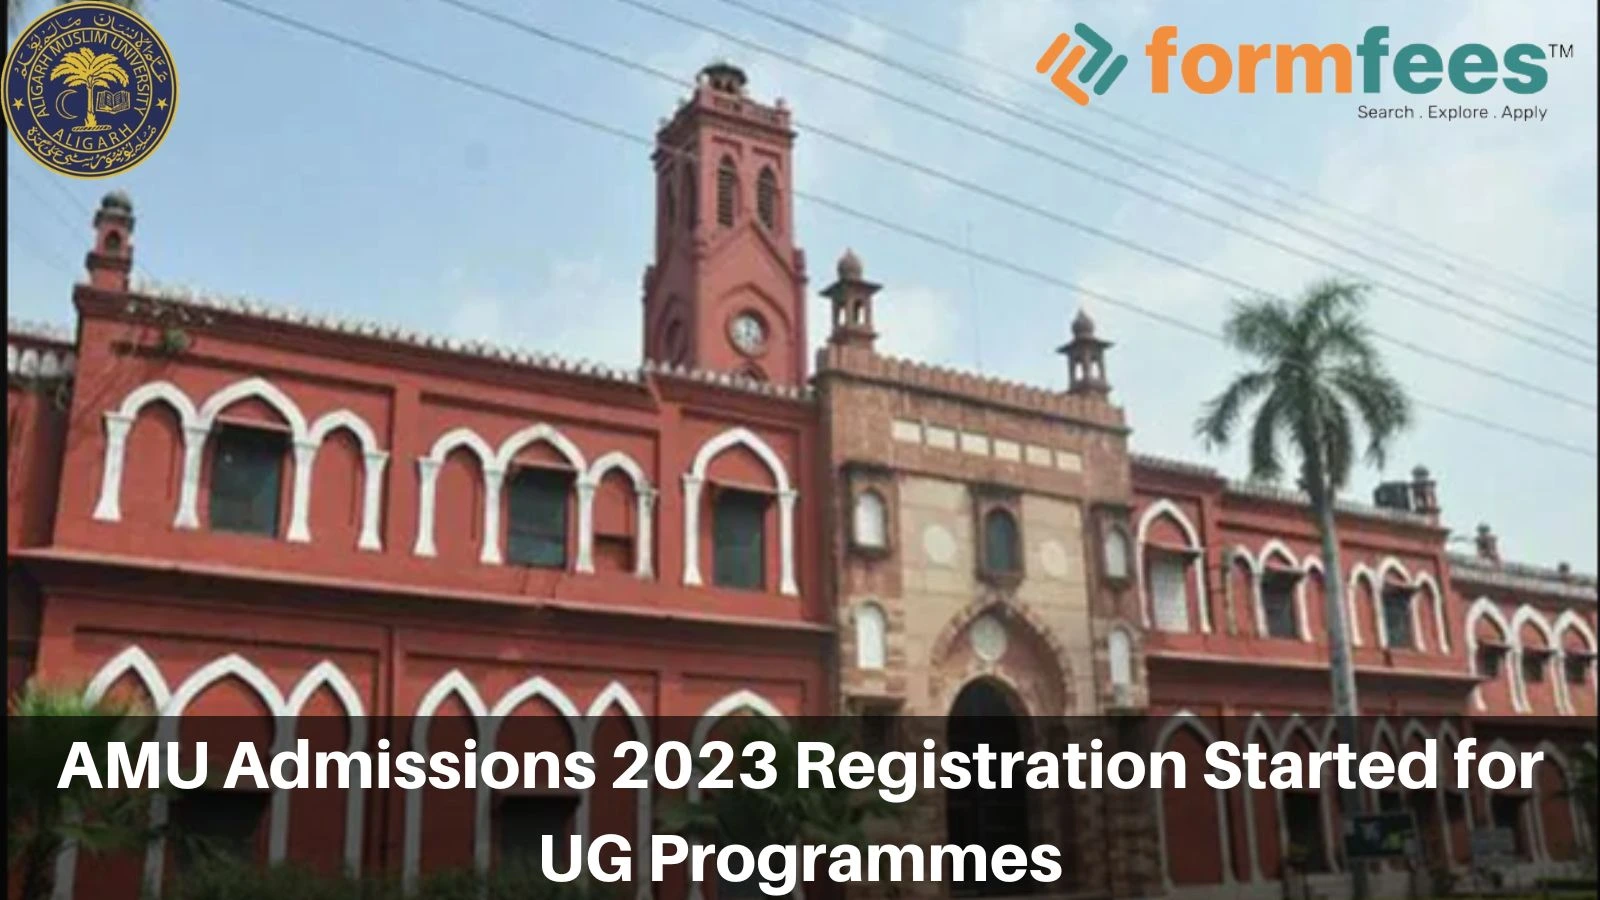 AMU Admissions 2023 Registration Started for UG Programmes